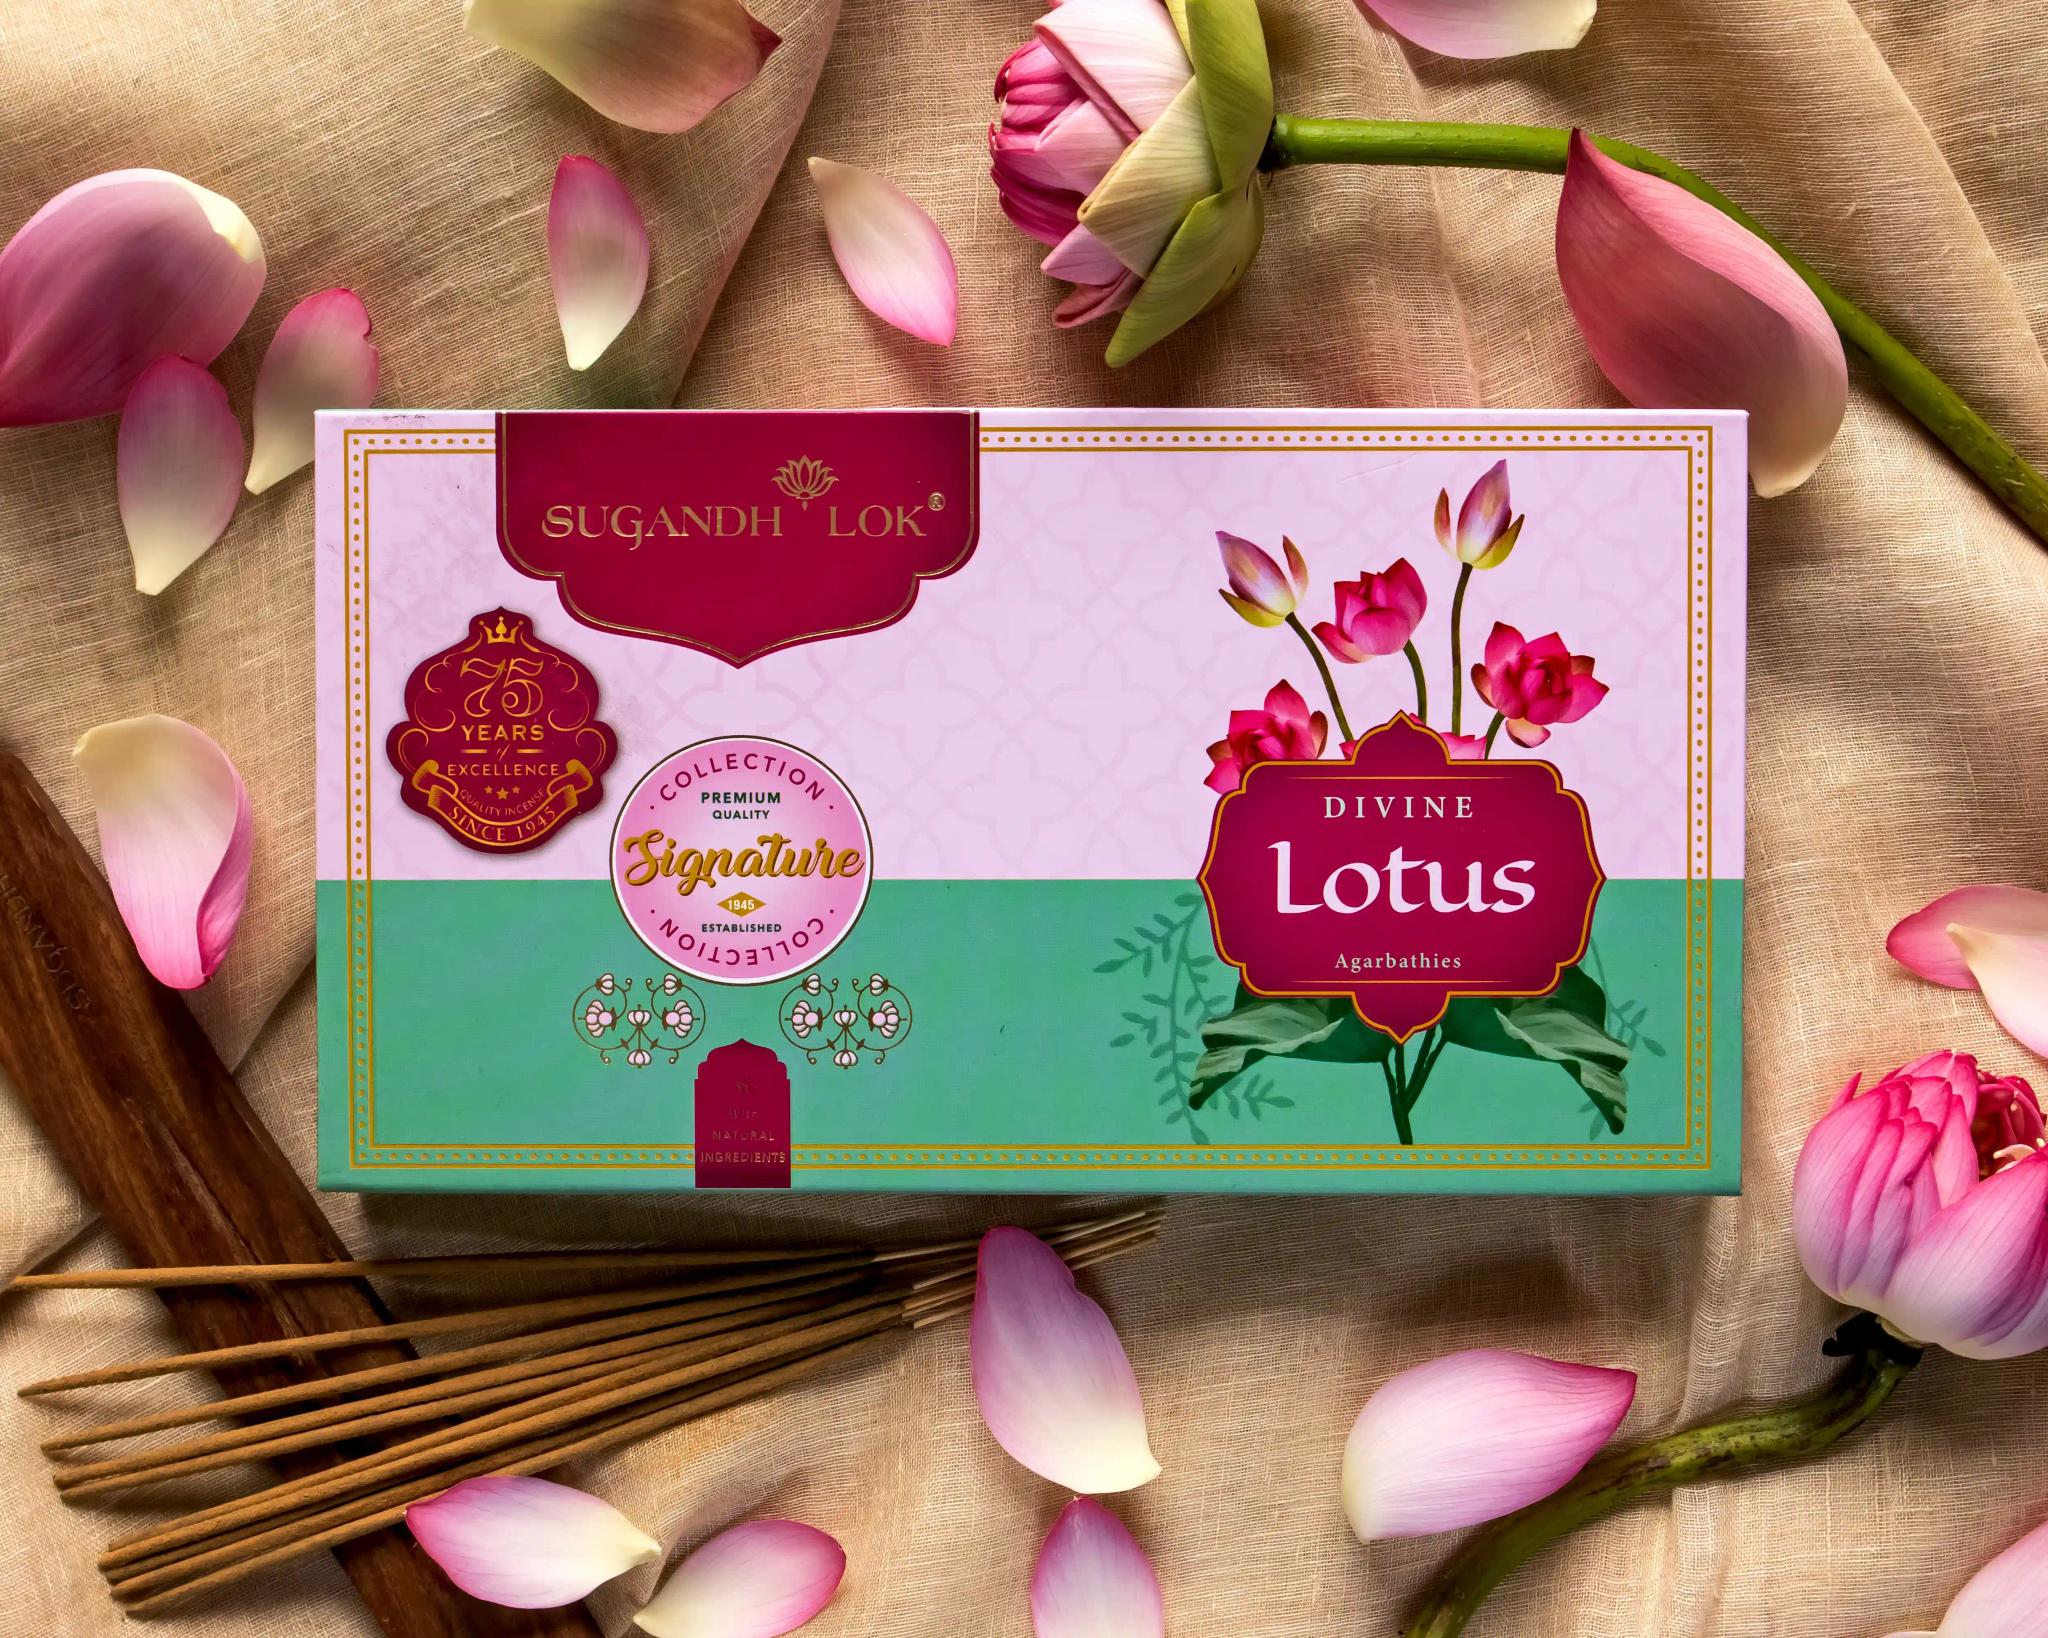 Signature Collection Divine Lotus Premium Agarbathies